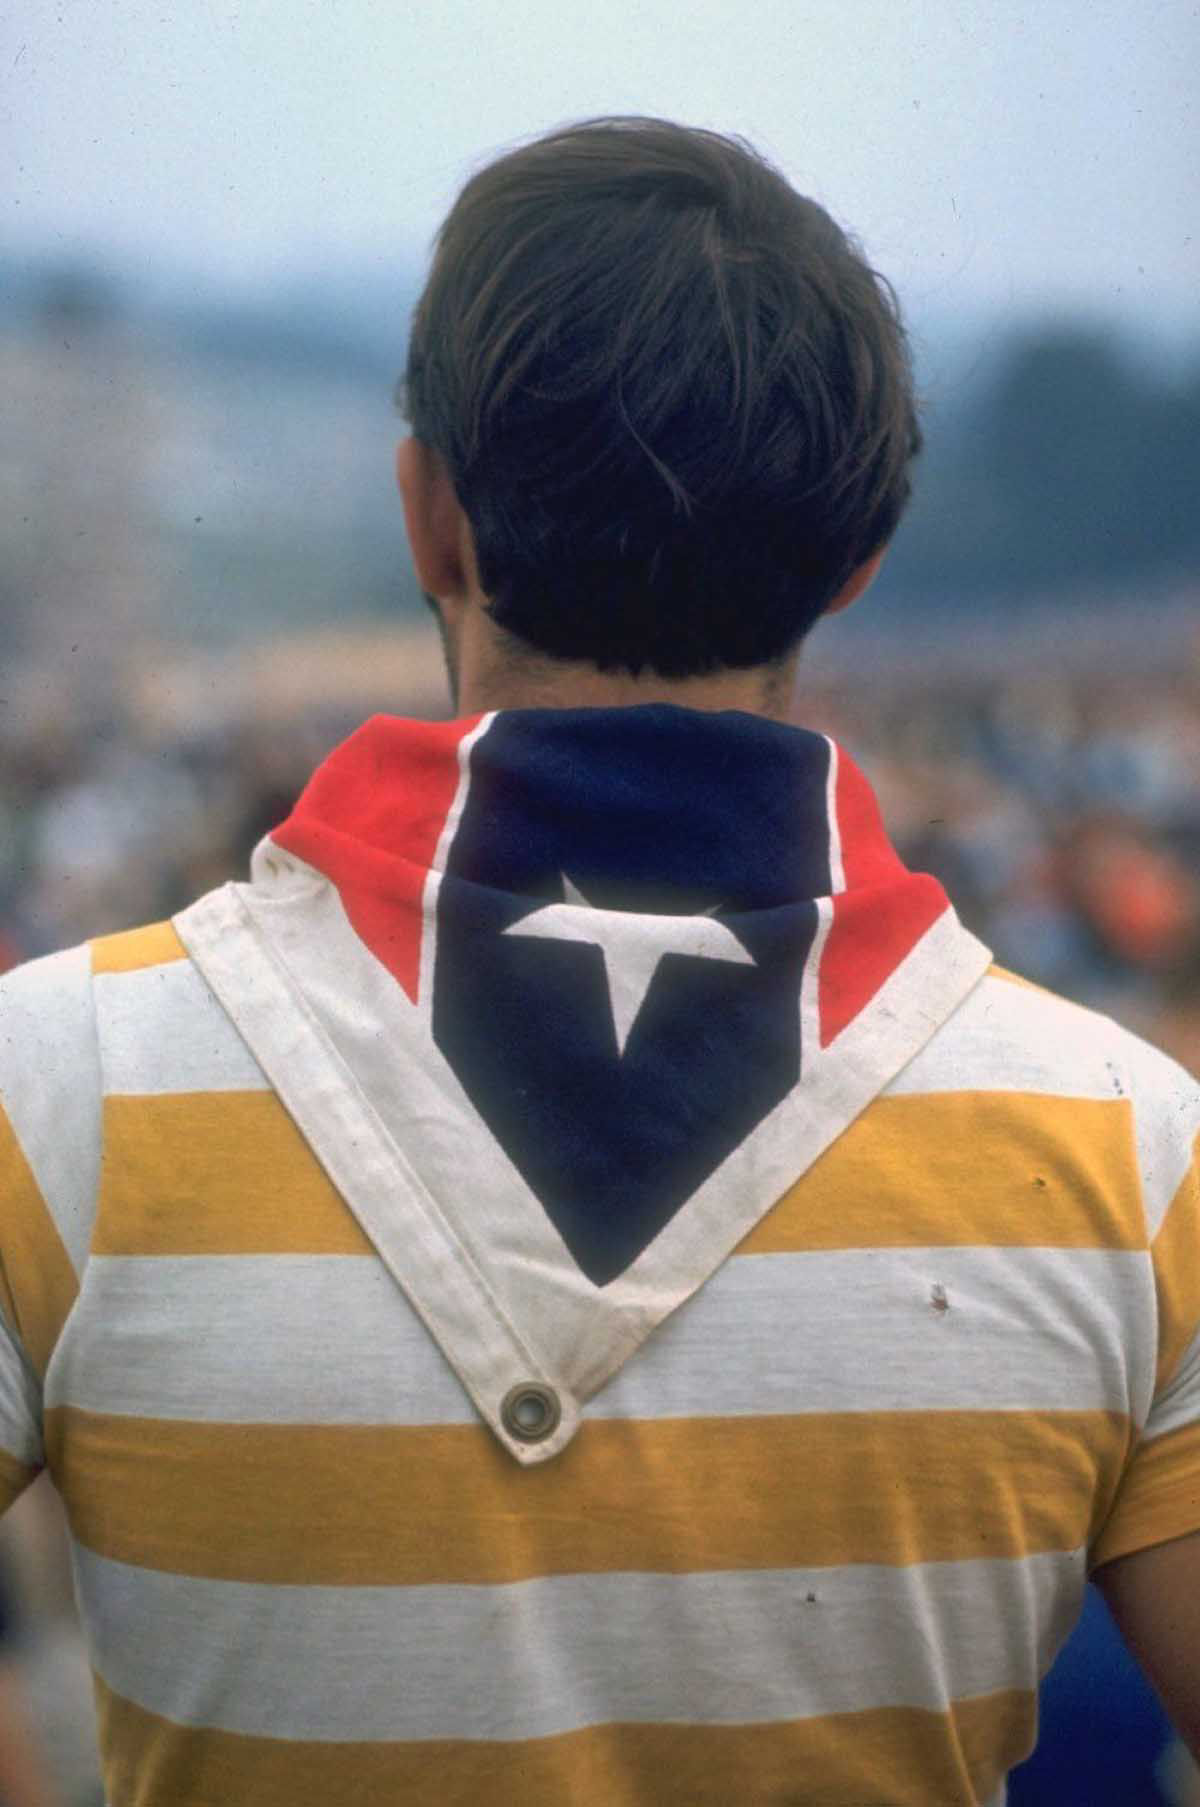 Fotos impressionantes retratam a moda rebelde de Woodstock em 1969 03